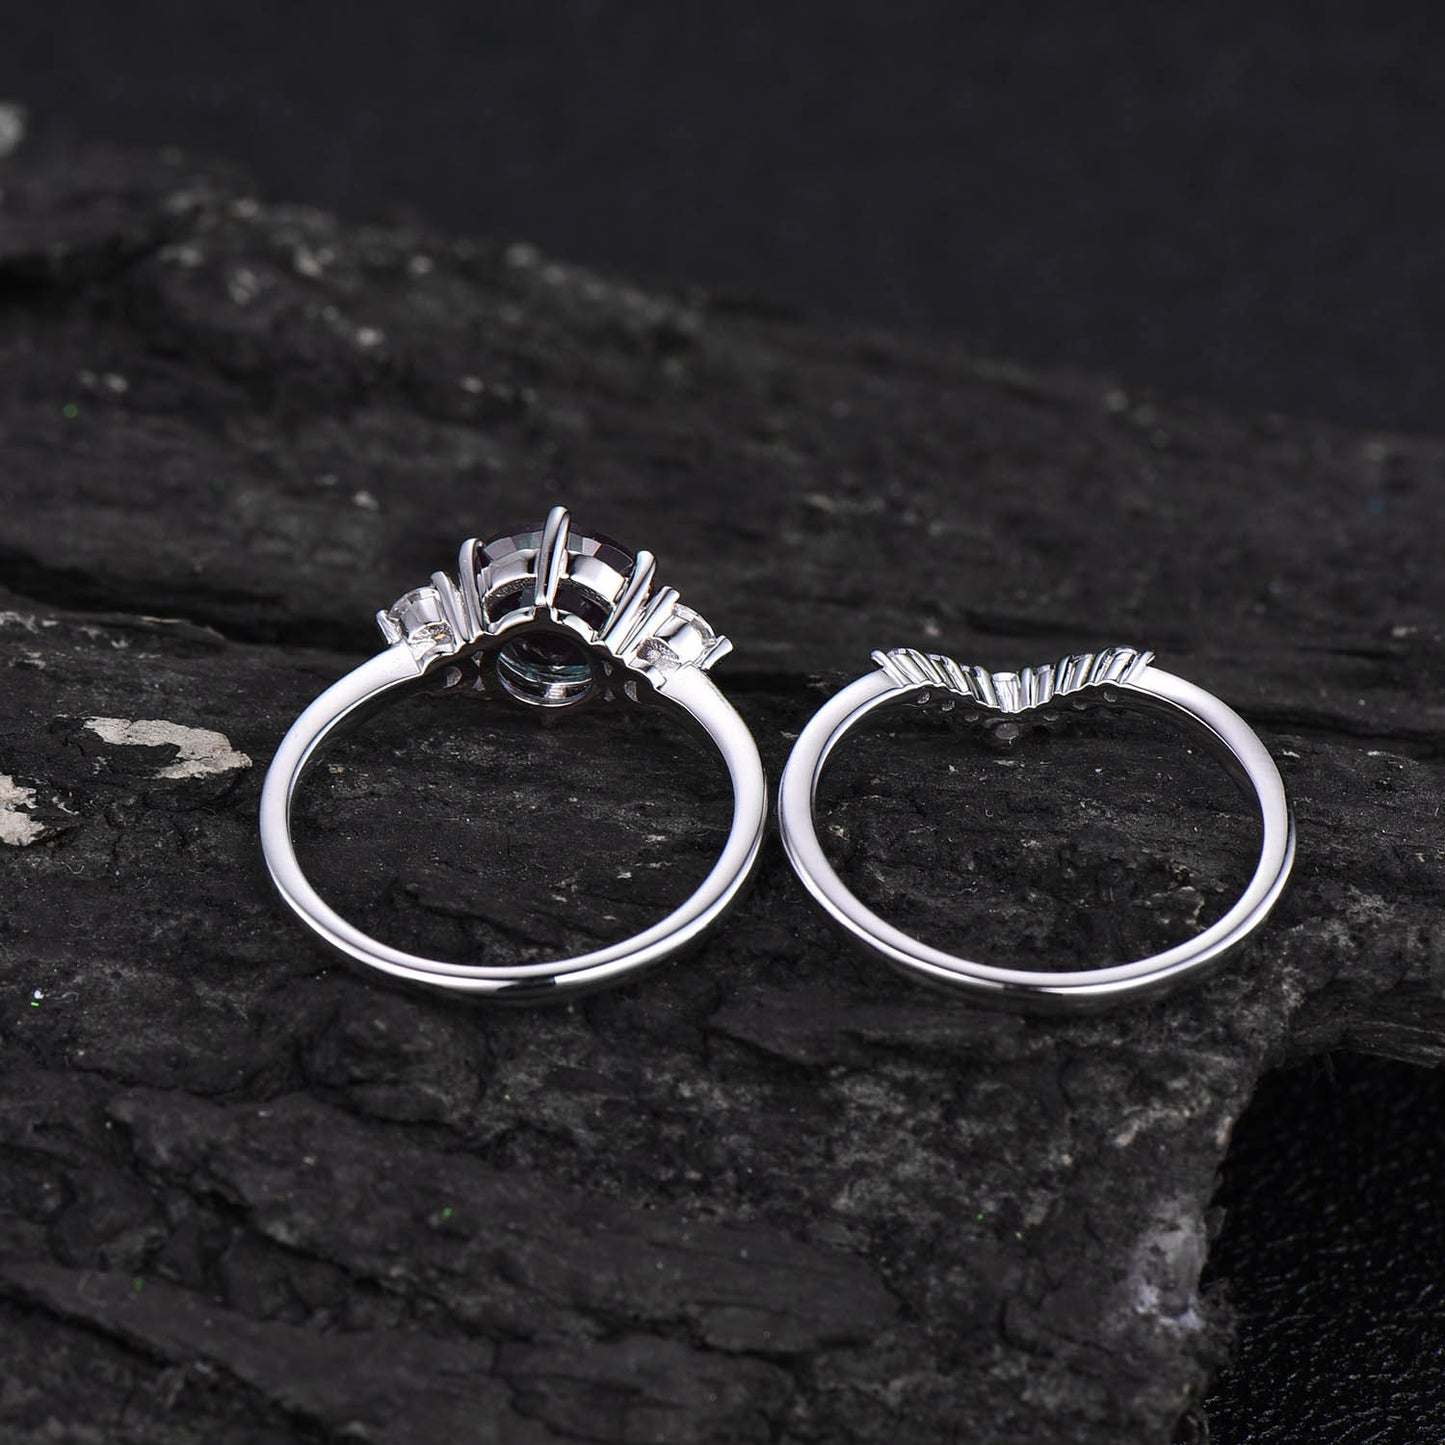 Vintage alexandrite engagement ring set 14k white gold three stone moissanite ring for women unique engagement ring promise wedding ring set